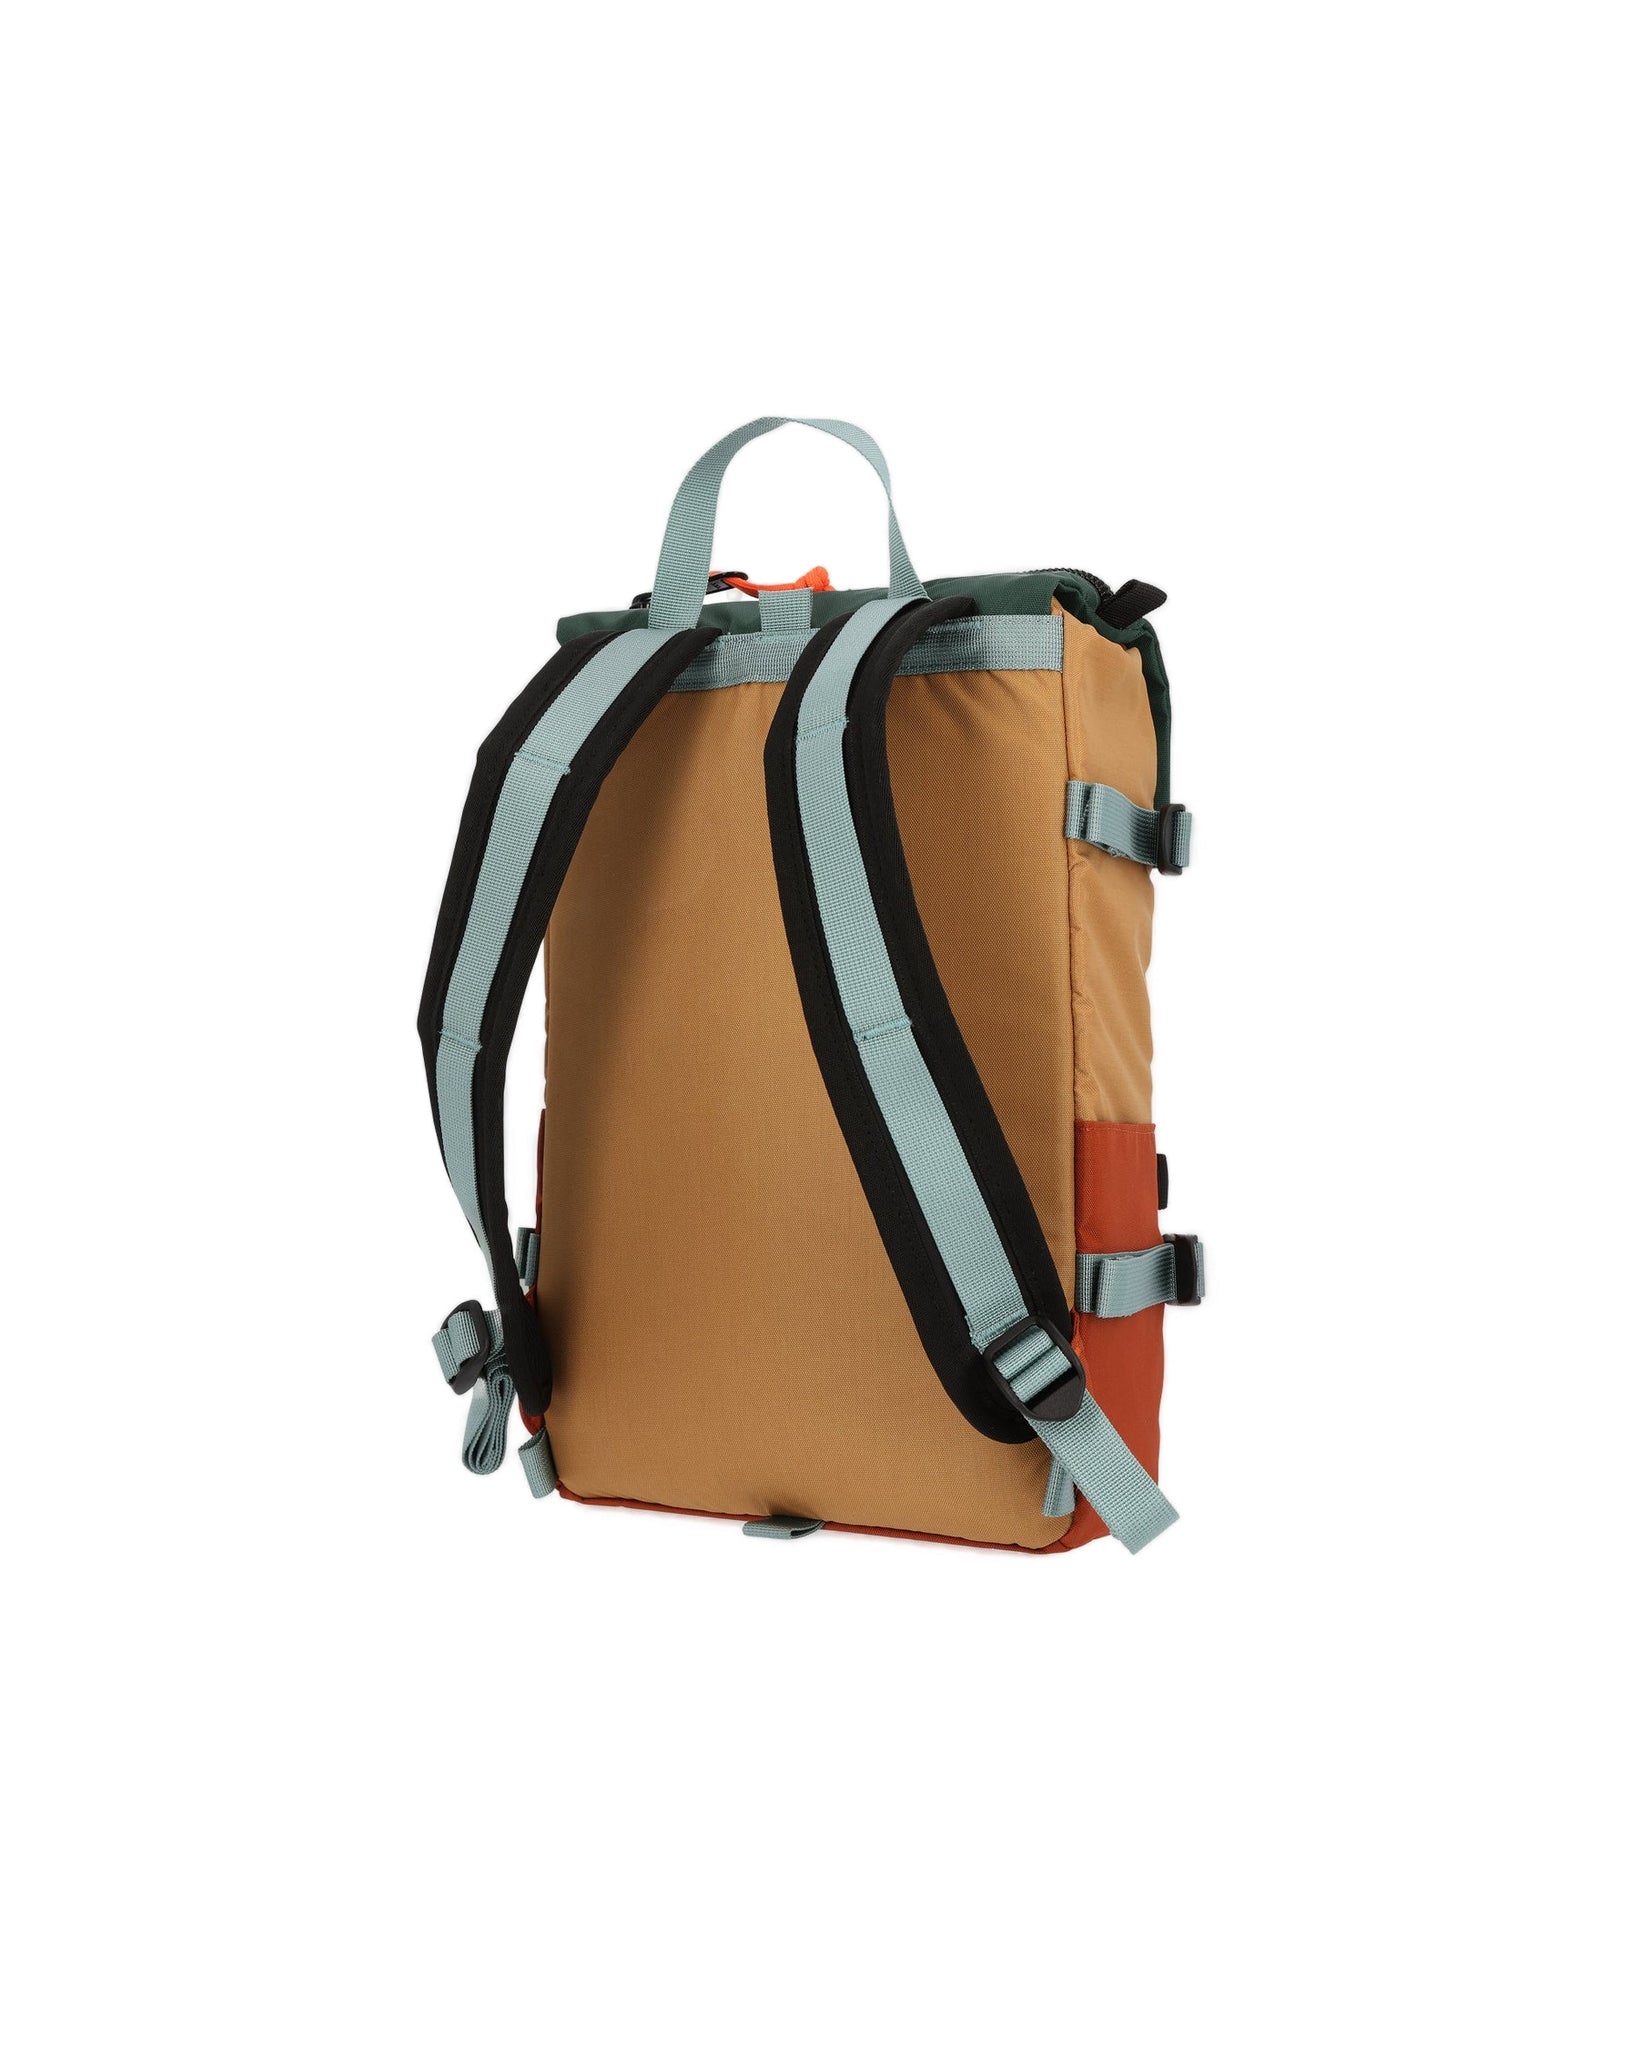 Rover Pack Mini Backpack - Clay/Khaki